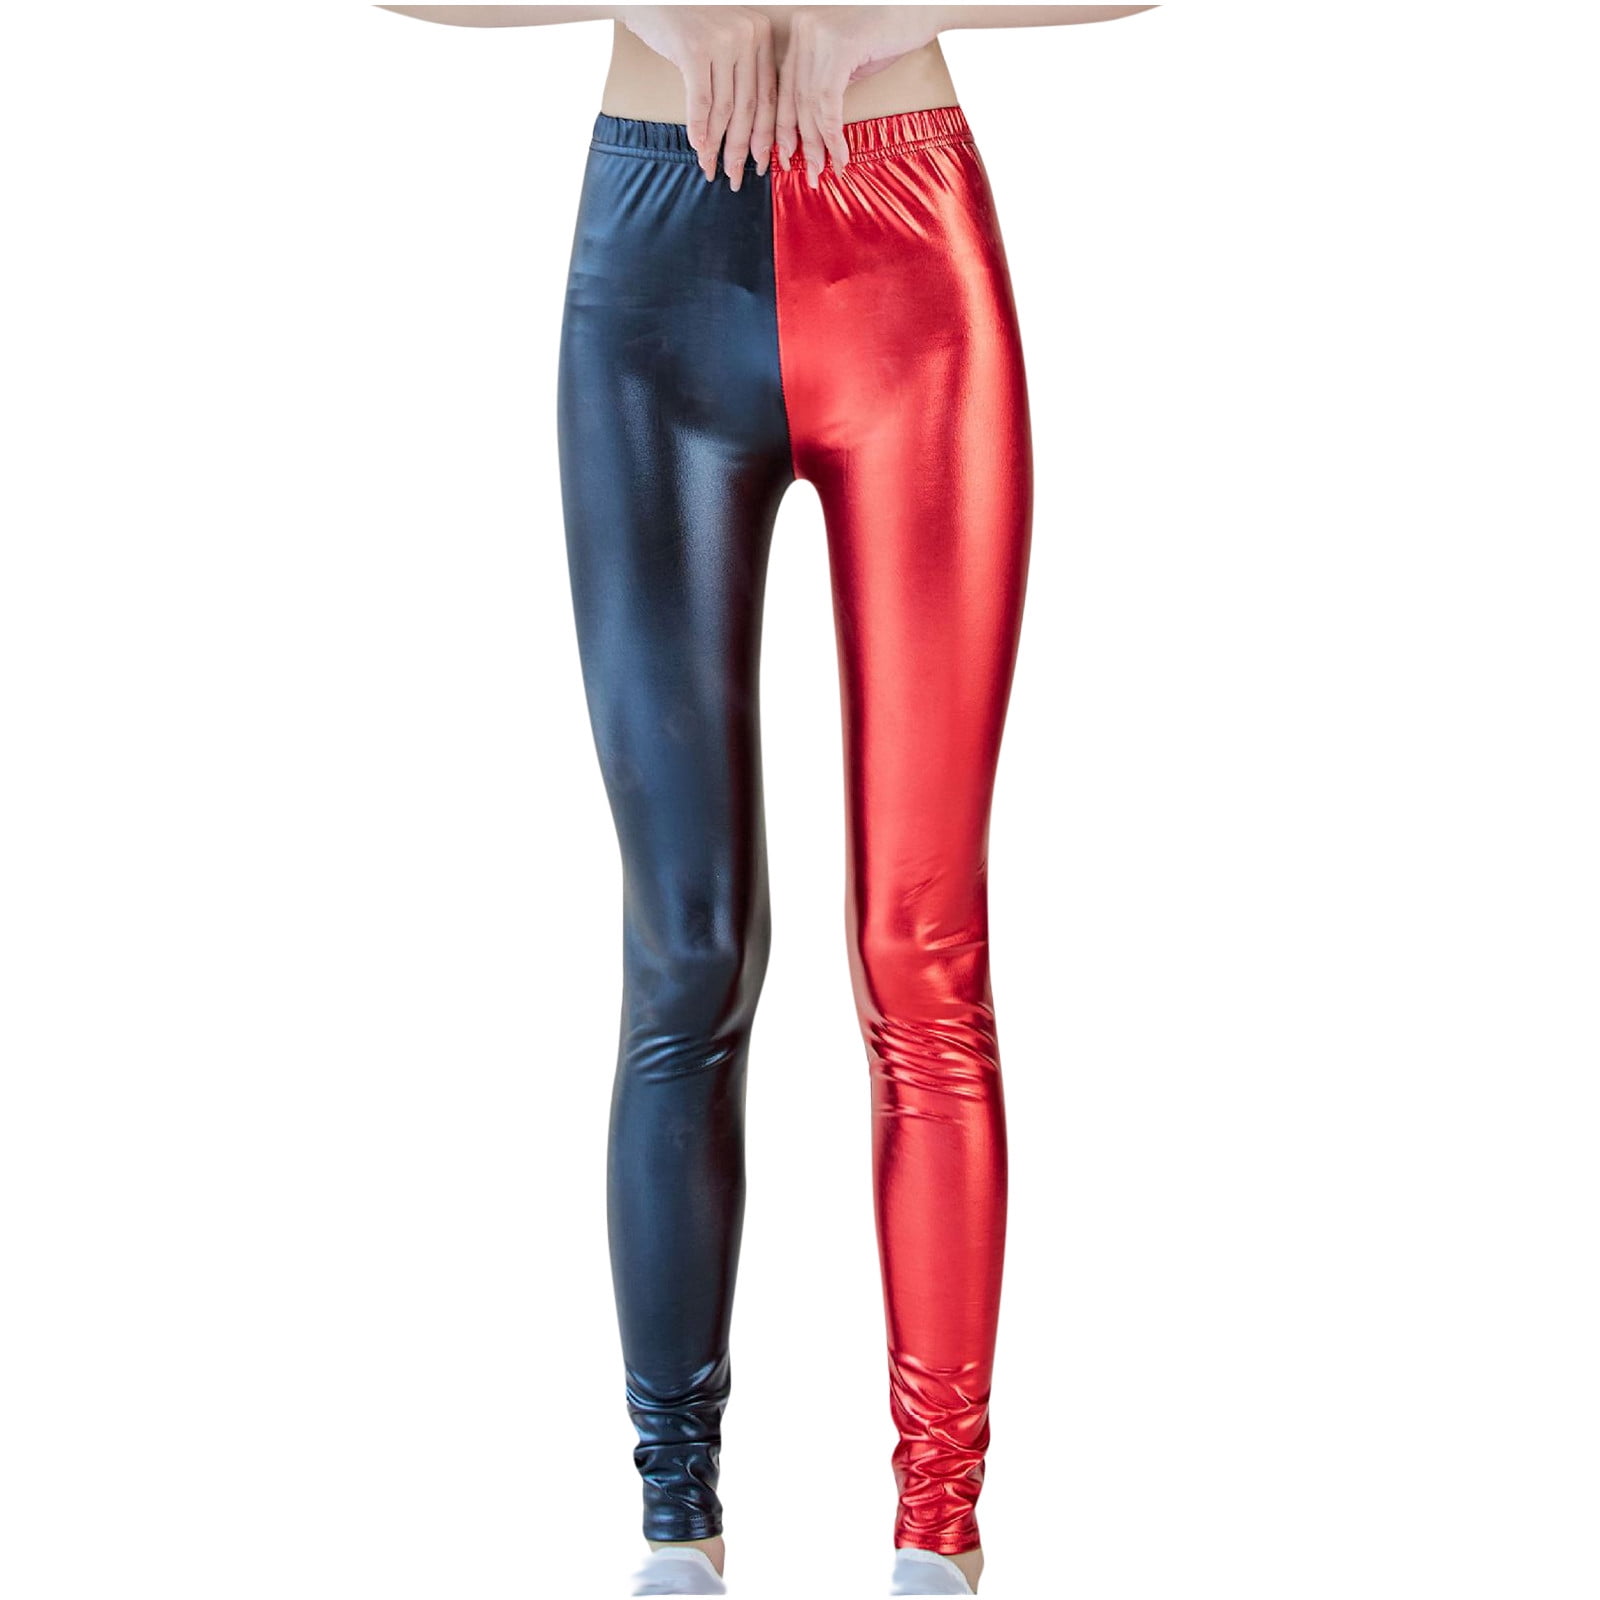 Women Wet Look Shiny Metallic Leggings Liquid Waist Stretch Pants Trouesrs  Party Clubwear for Women 